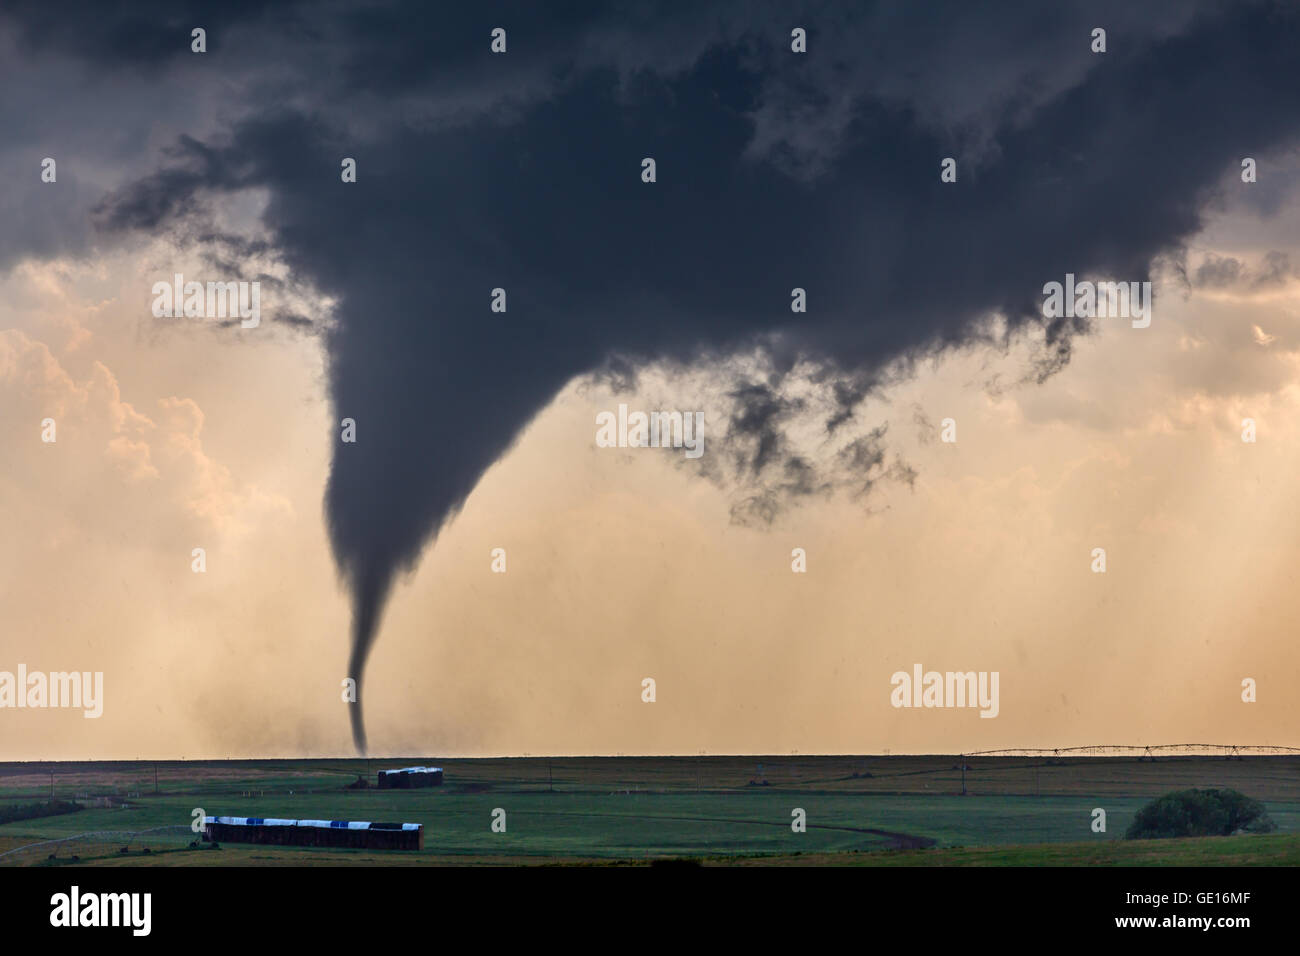 Un tornado desciende de un supercell cerca de Dodge City, Kansas, 24 de mayo de 2016. Este fue uno de los 15 tornados tornados esta tormenta producida. Foto de stock